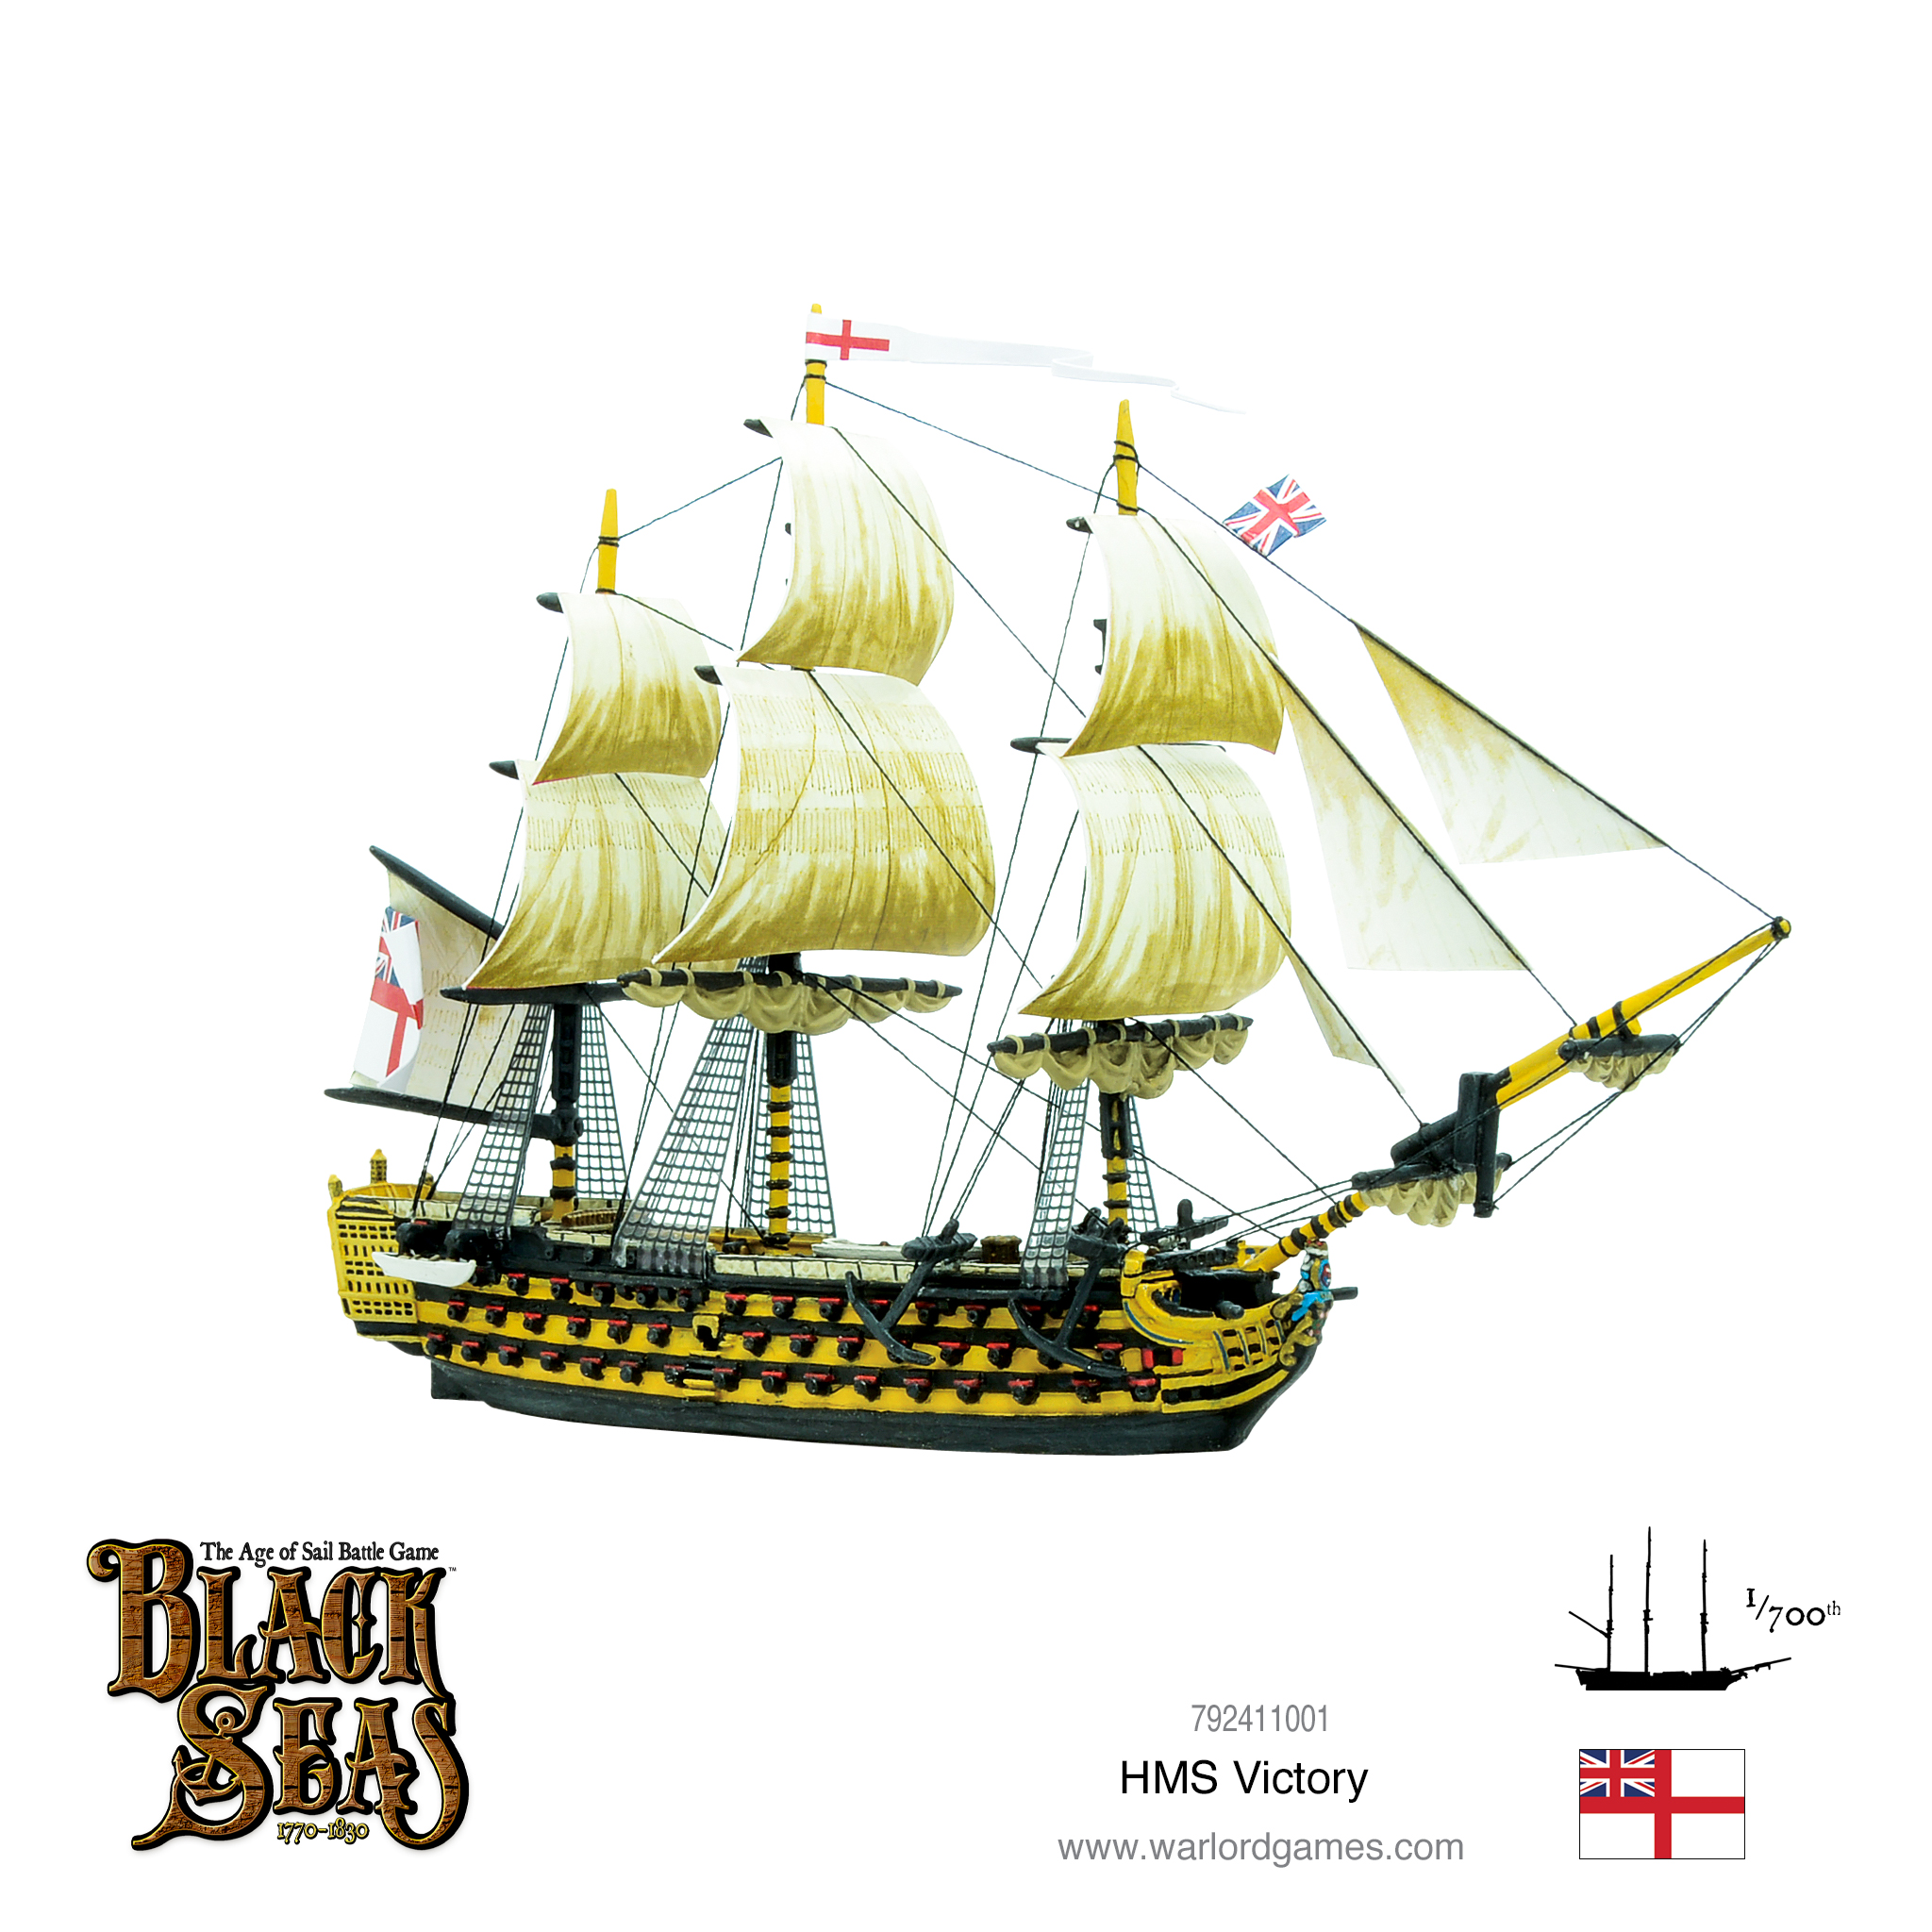 Warlord Games Black Seas HMS Victory 1770-1830 Sails ship Royal Navy Britain 